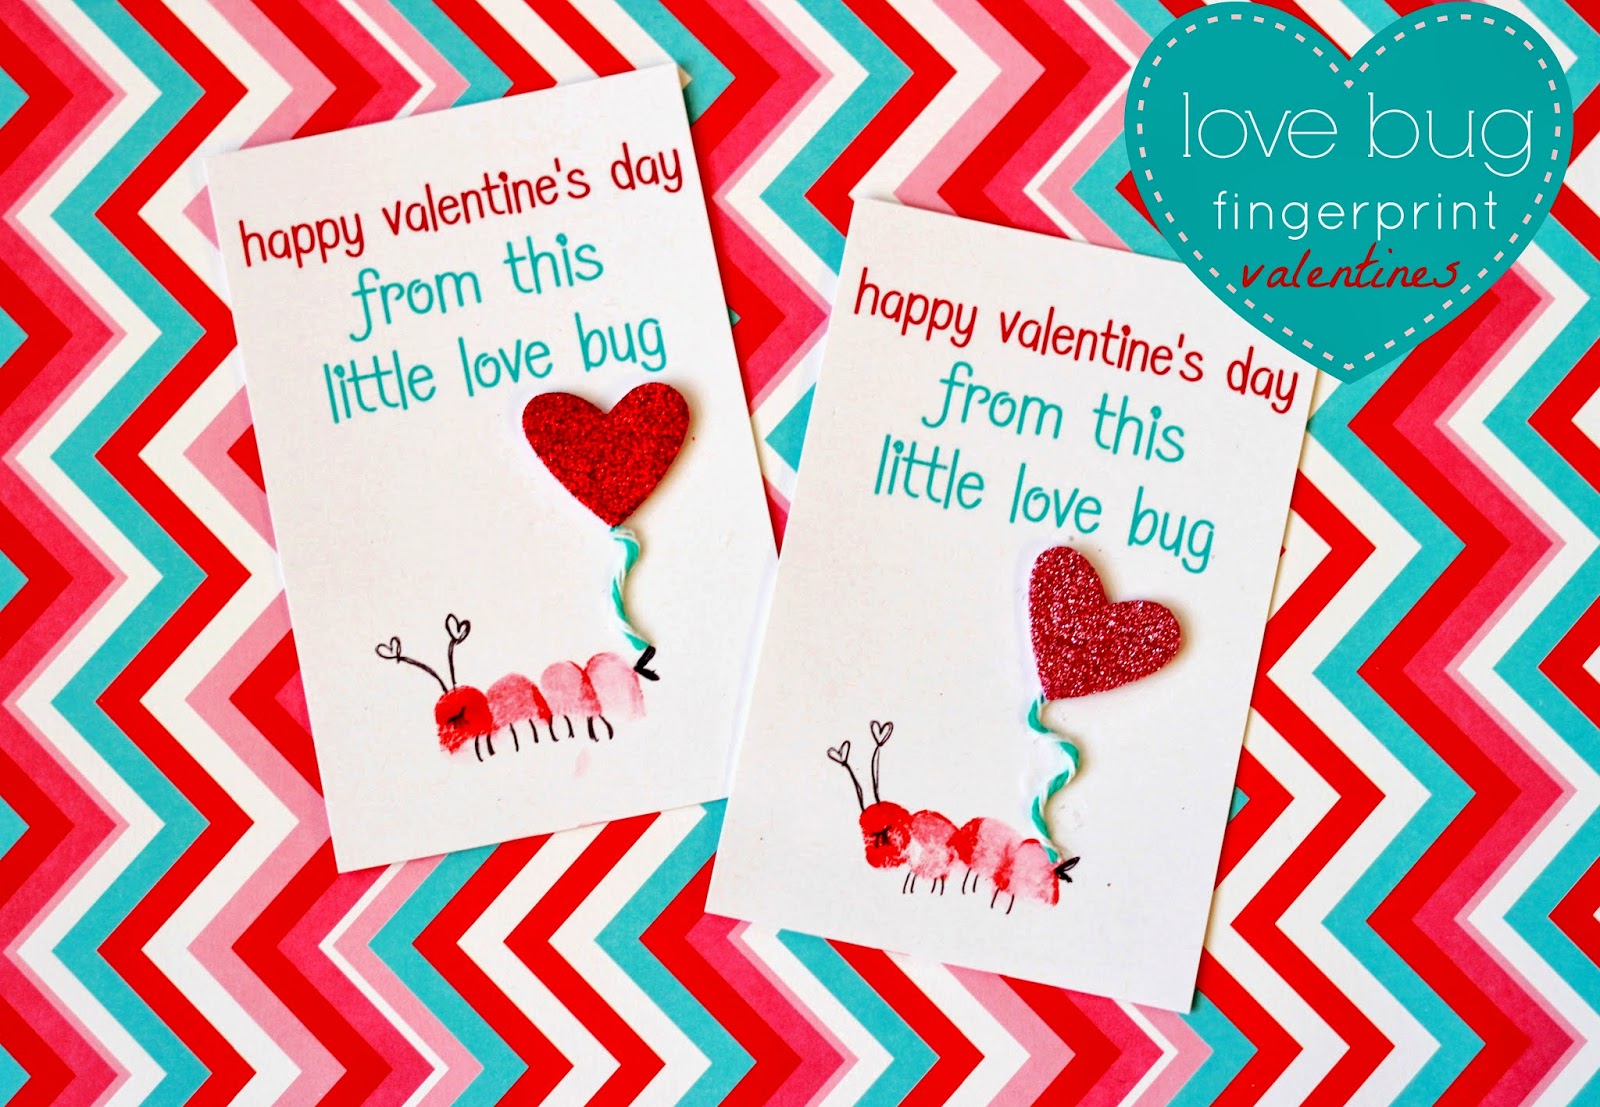 Love Bug Fingerprint Valentines Cards